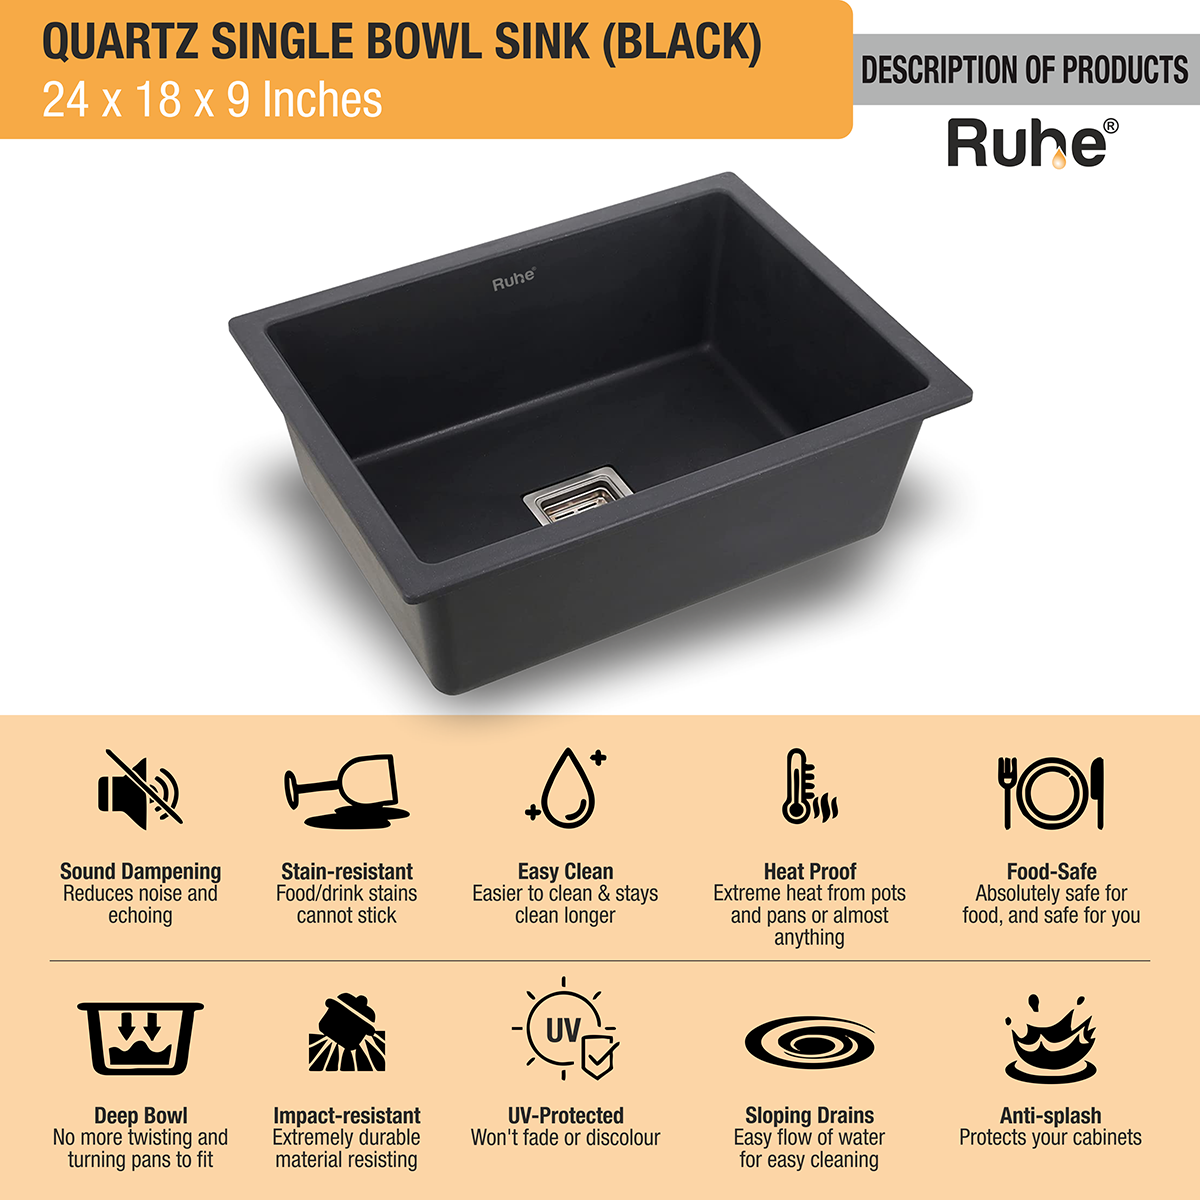 Quartz Black Single Bowl Kitchen Sink (24 x 18 x 9 inches) description of products